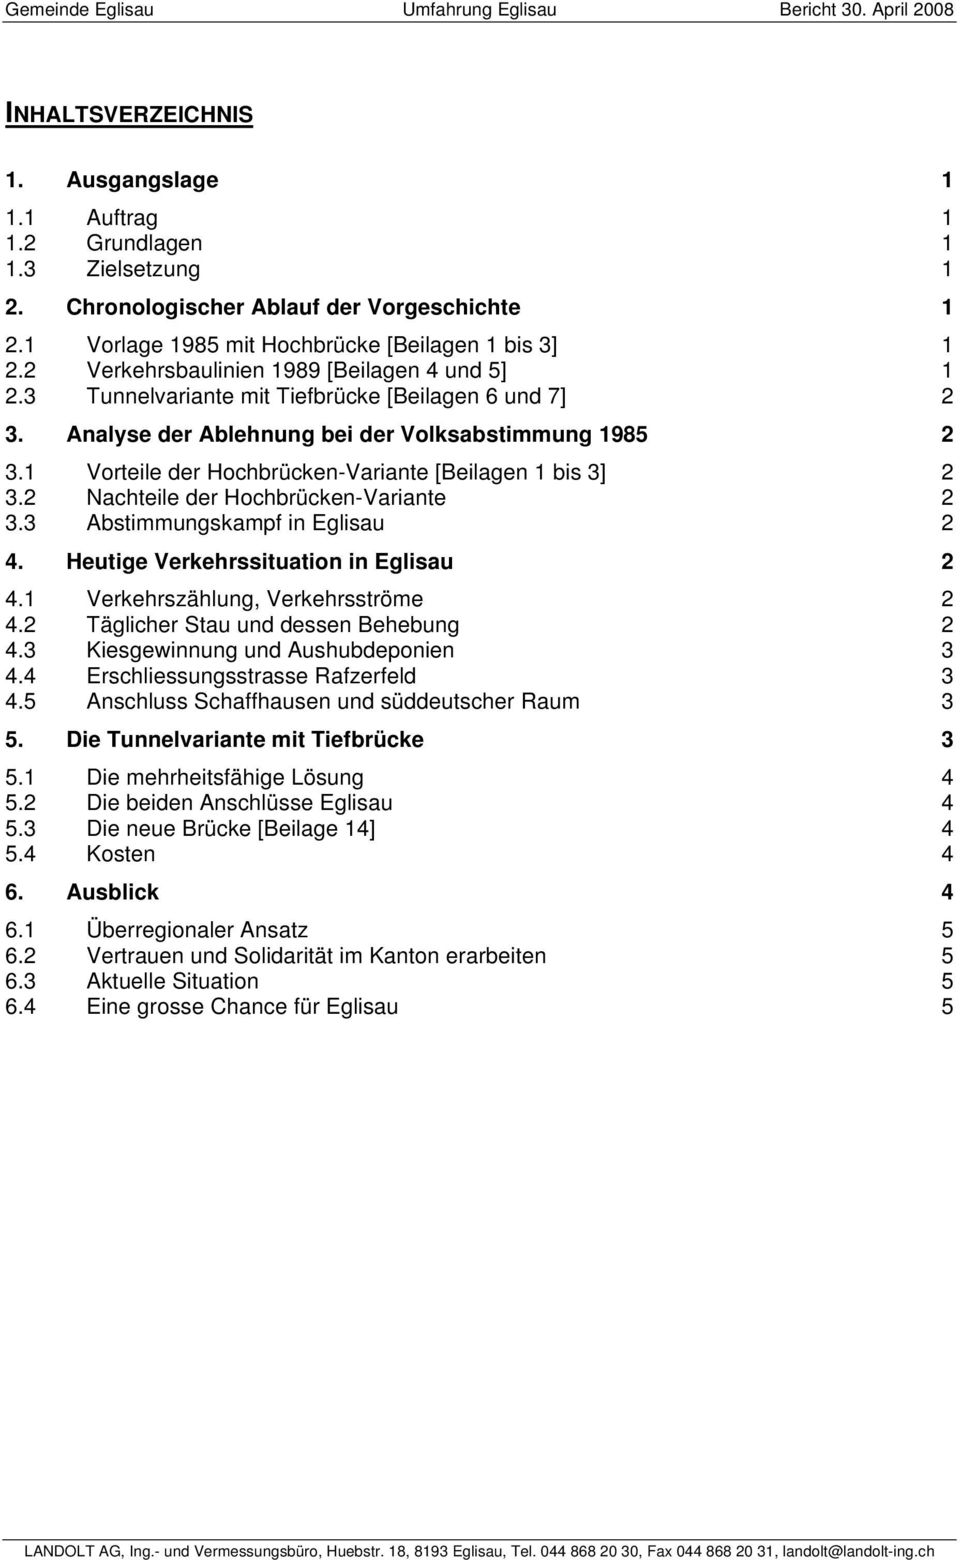 1 Vorteile der Hochbrücken-Variante [Beilagen 1 bis 3] 2 3.2 Nachteile der Hochbrücken-Variante 2 3.3 Abstimmungskampf in Eglisau 2 4. Heutige Verkehrssituation in Eglisau 2 4.